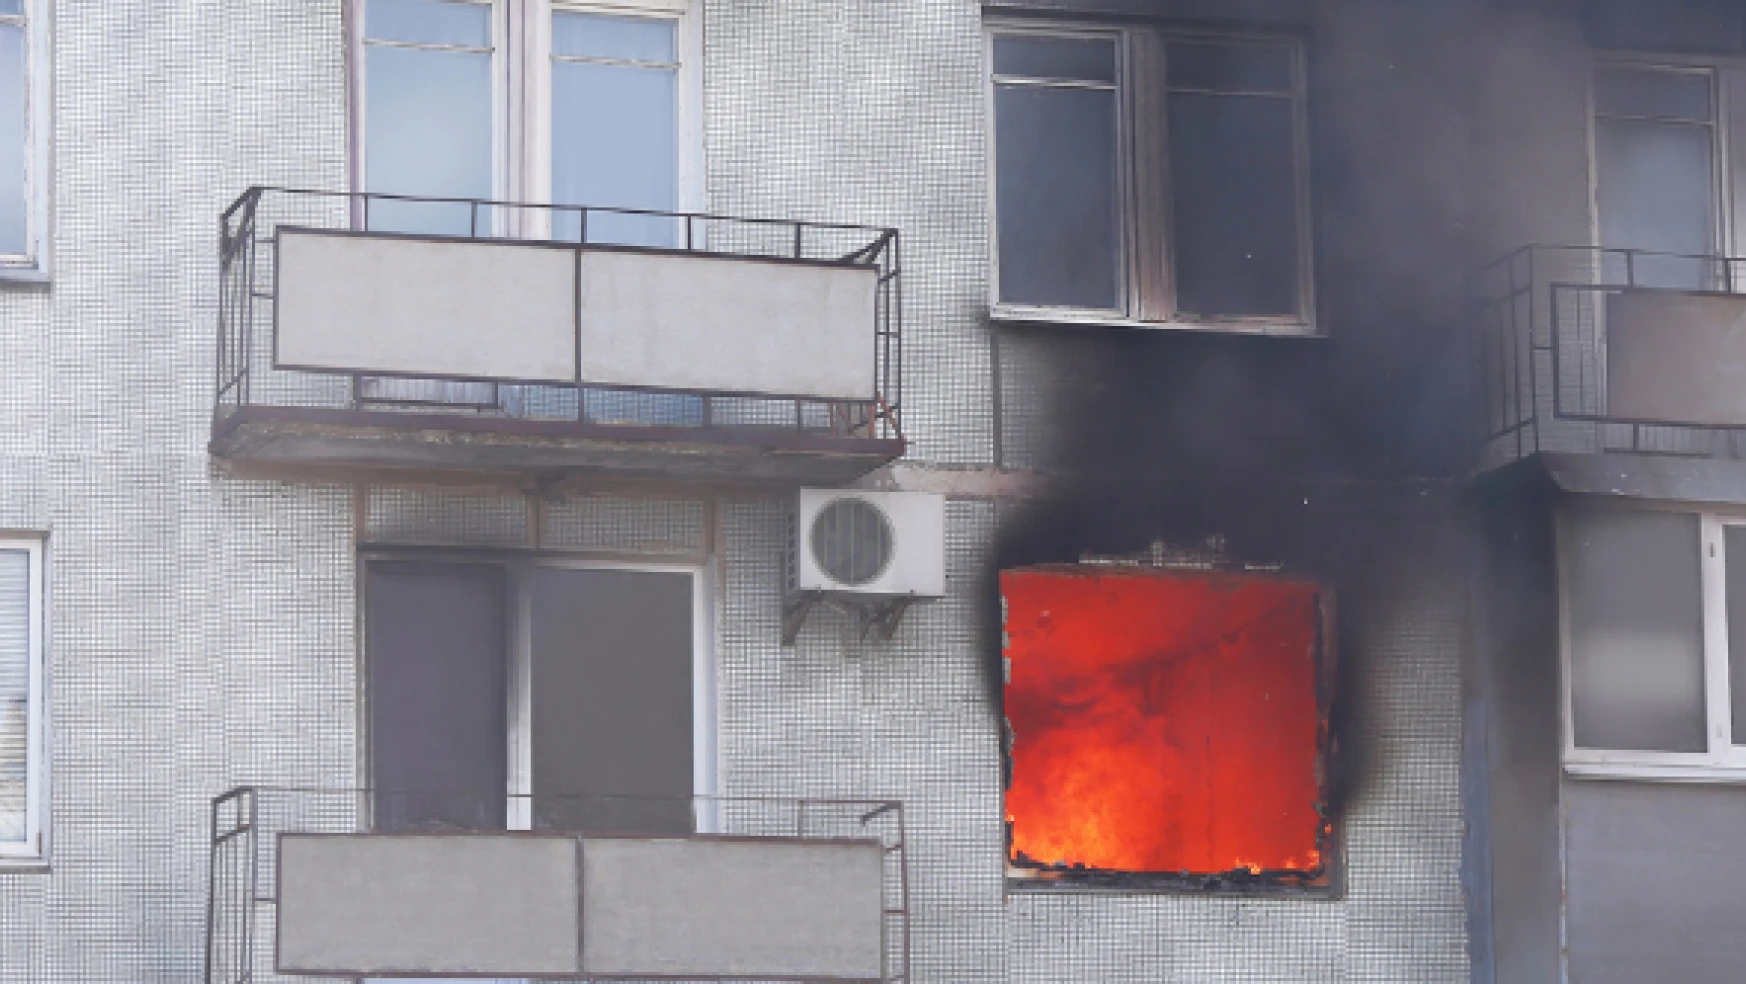 Kars'ta 4 katlı apartmanda yangın: 10 kişi hastaneye kaldırıldı